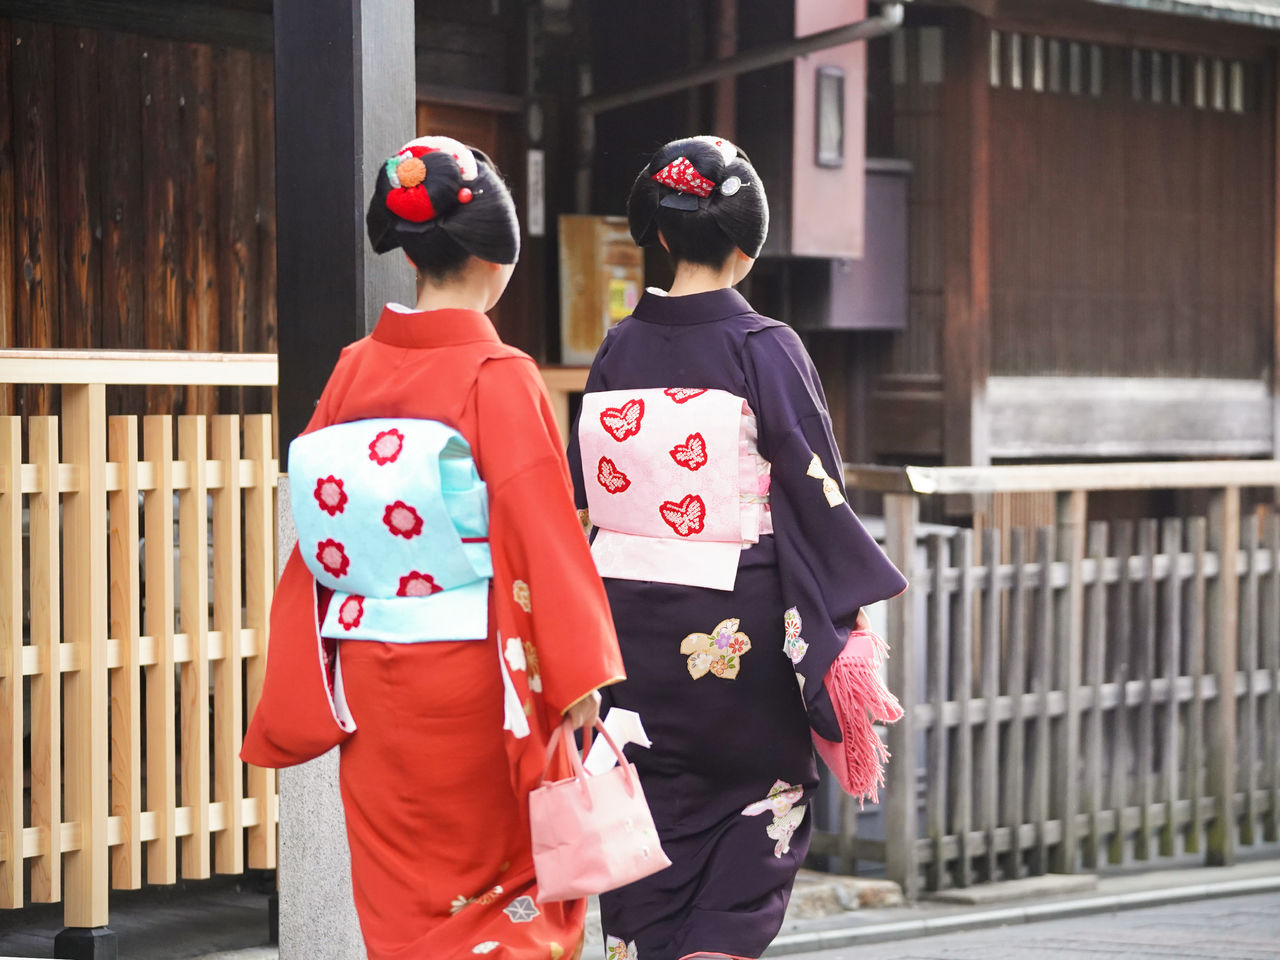 Гейши Гиона отправляются с приветствиями в первый день котохадзимэ. Часто они надевают одинаковые кимоно, пояса оби и украшения